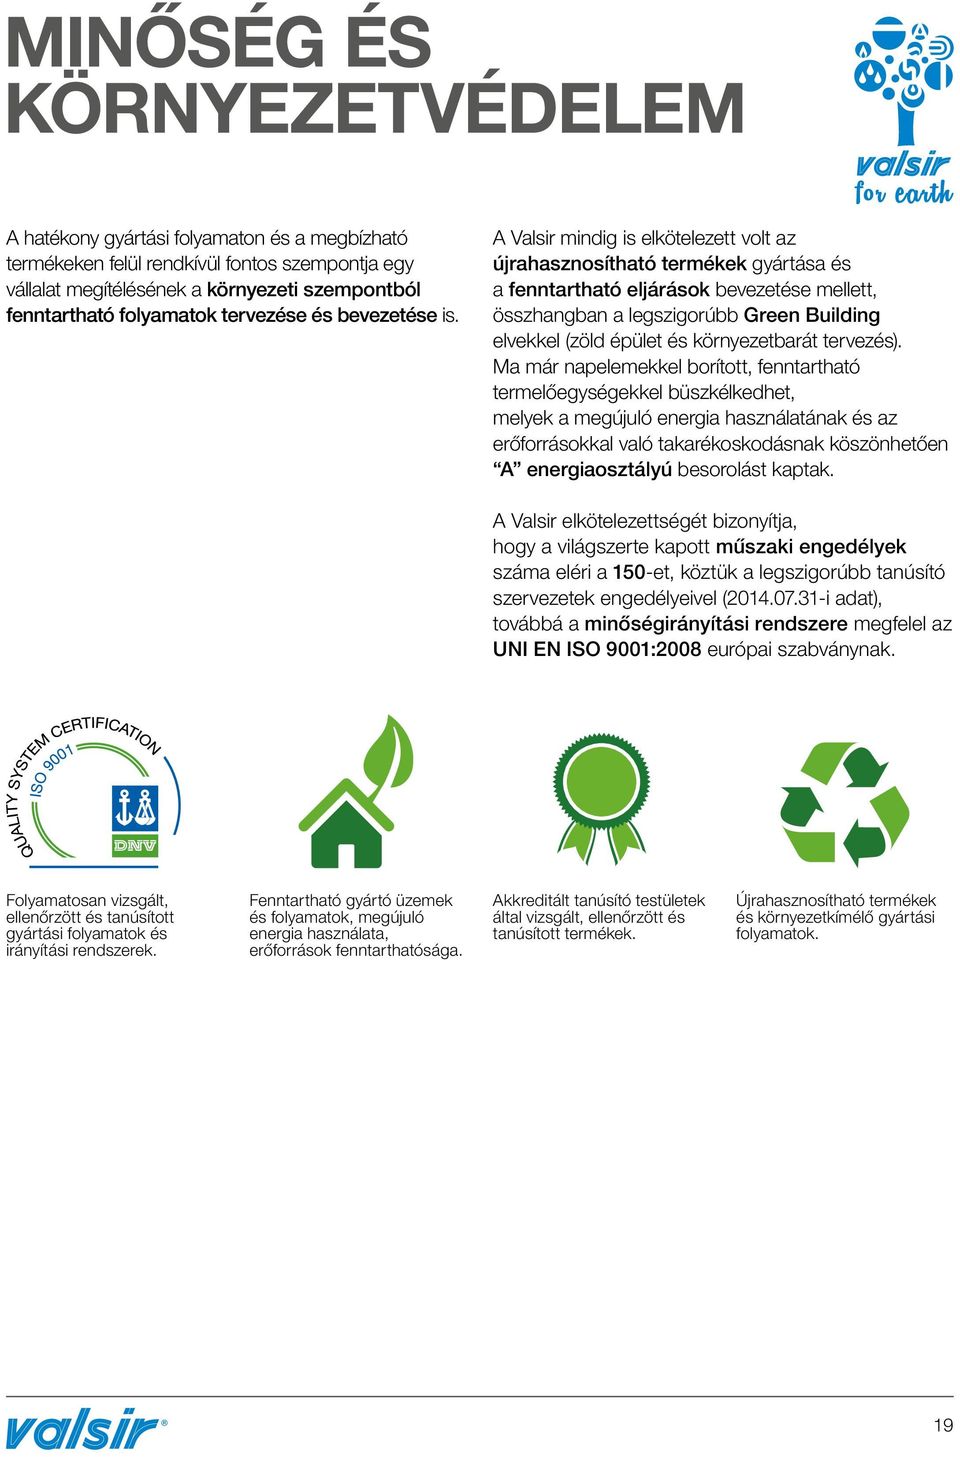 A Valsir mindig is elkötelezett volt az újrahasznosítható termékek gyártása és a fenntartható eljárások bevezetése mellett, összhangban a legszigorúbb Green Building elvekkel (zöld épület és